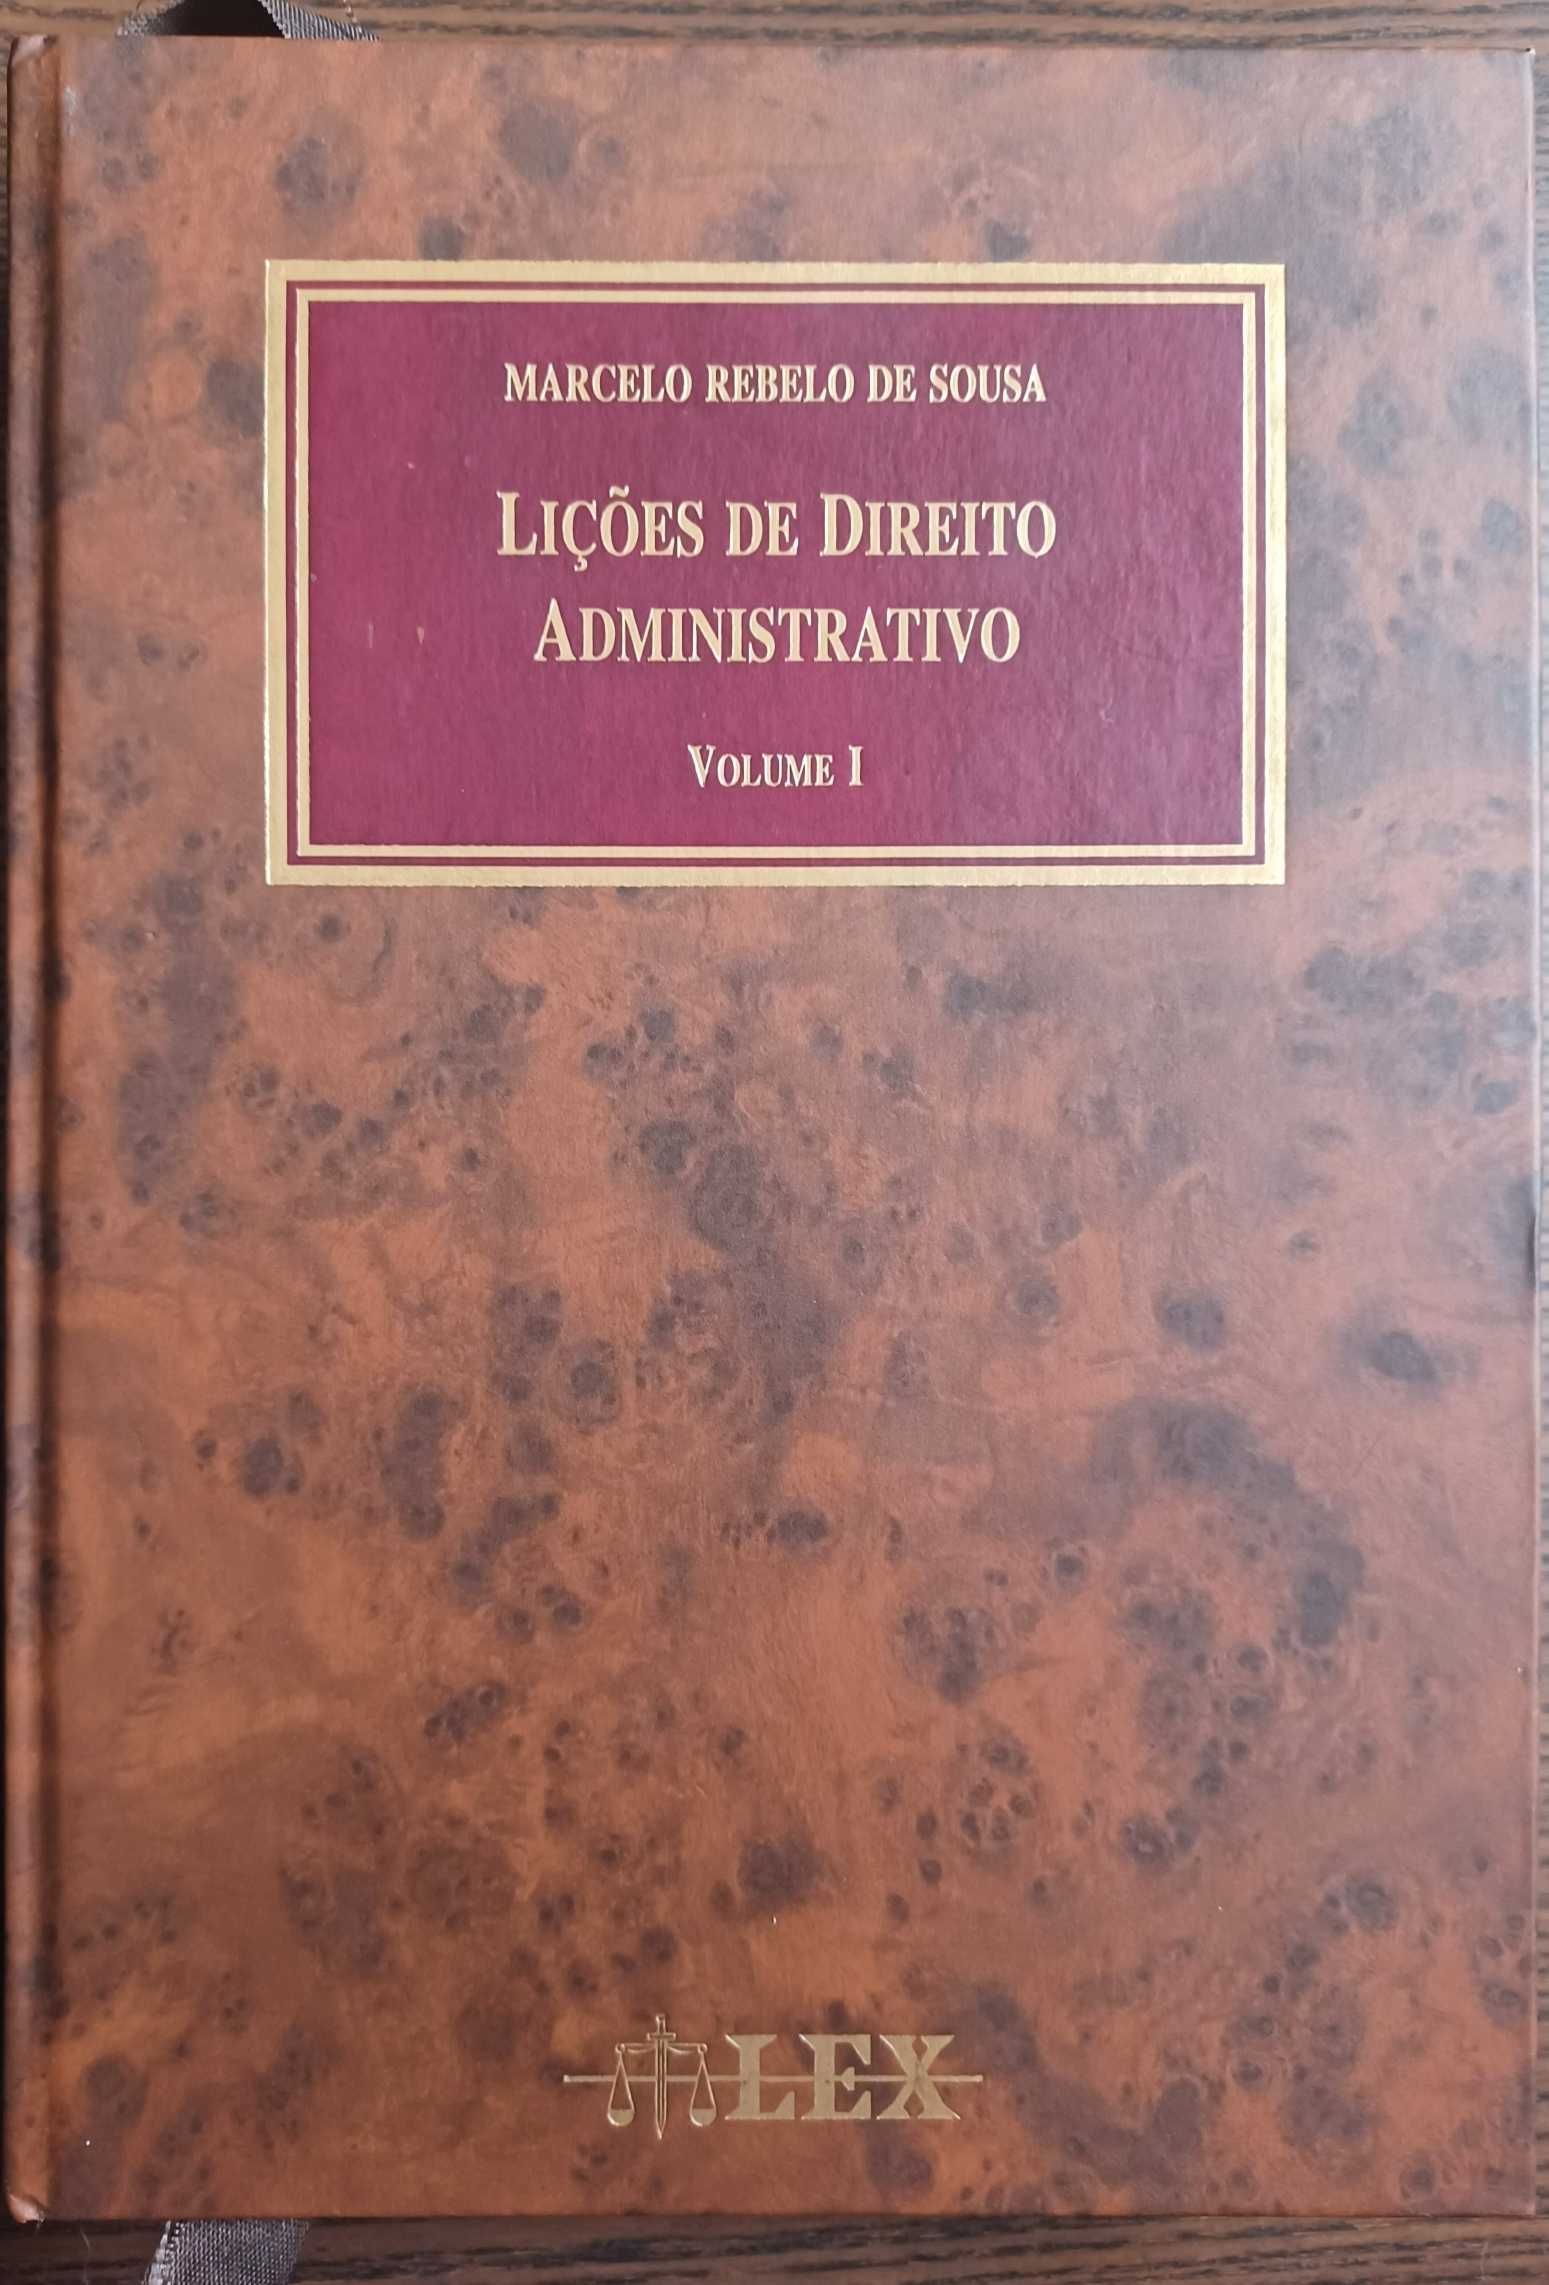 Lições de Direito Administrativo, Volume I, Marcelo Rebelo de Sousa